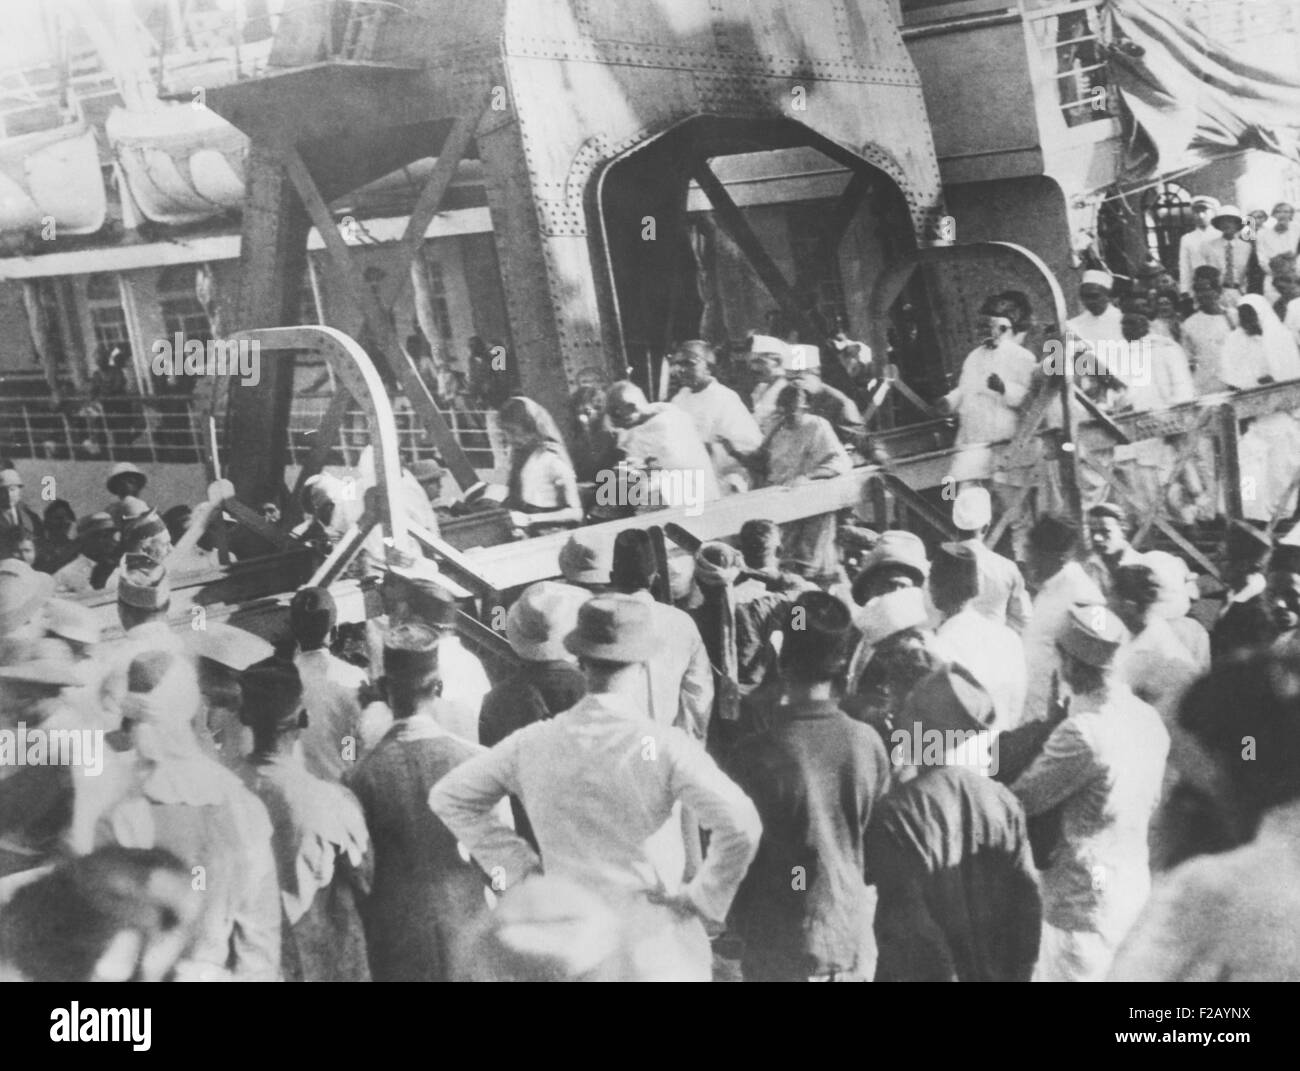 Mahatma Gandhi die Ankunft in Bombay, Indien, erfüllt von Tausenden jubelnden Gangway hinunter. Er kehrte aus der 2. Roundtable-Konferenz in London, die Reformen in Indien diskutiert. Dezember 1931. (CSU 2015 9 716) Stockfoto